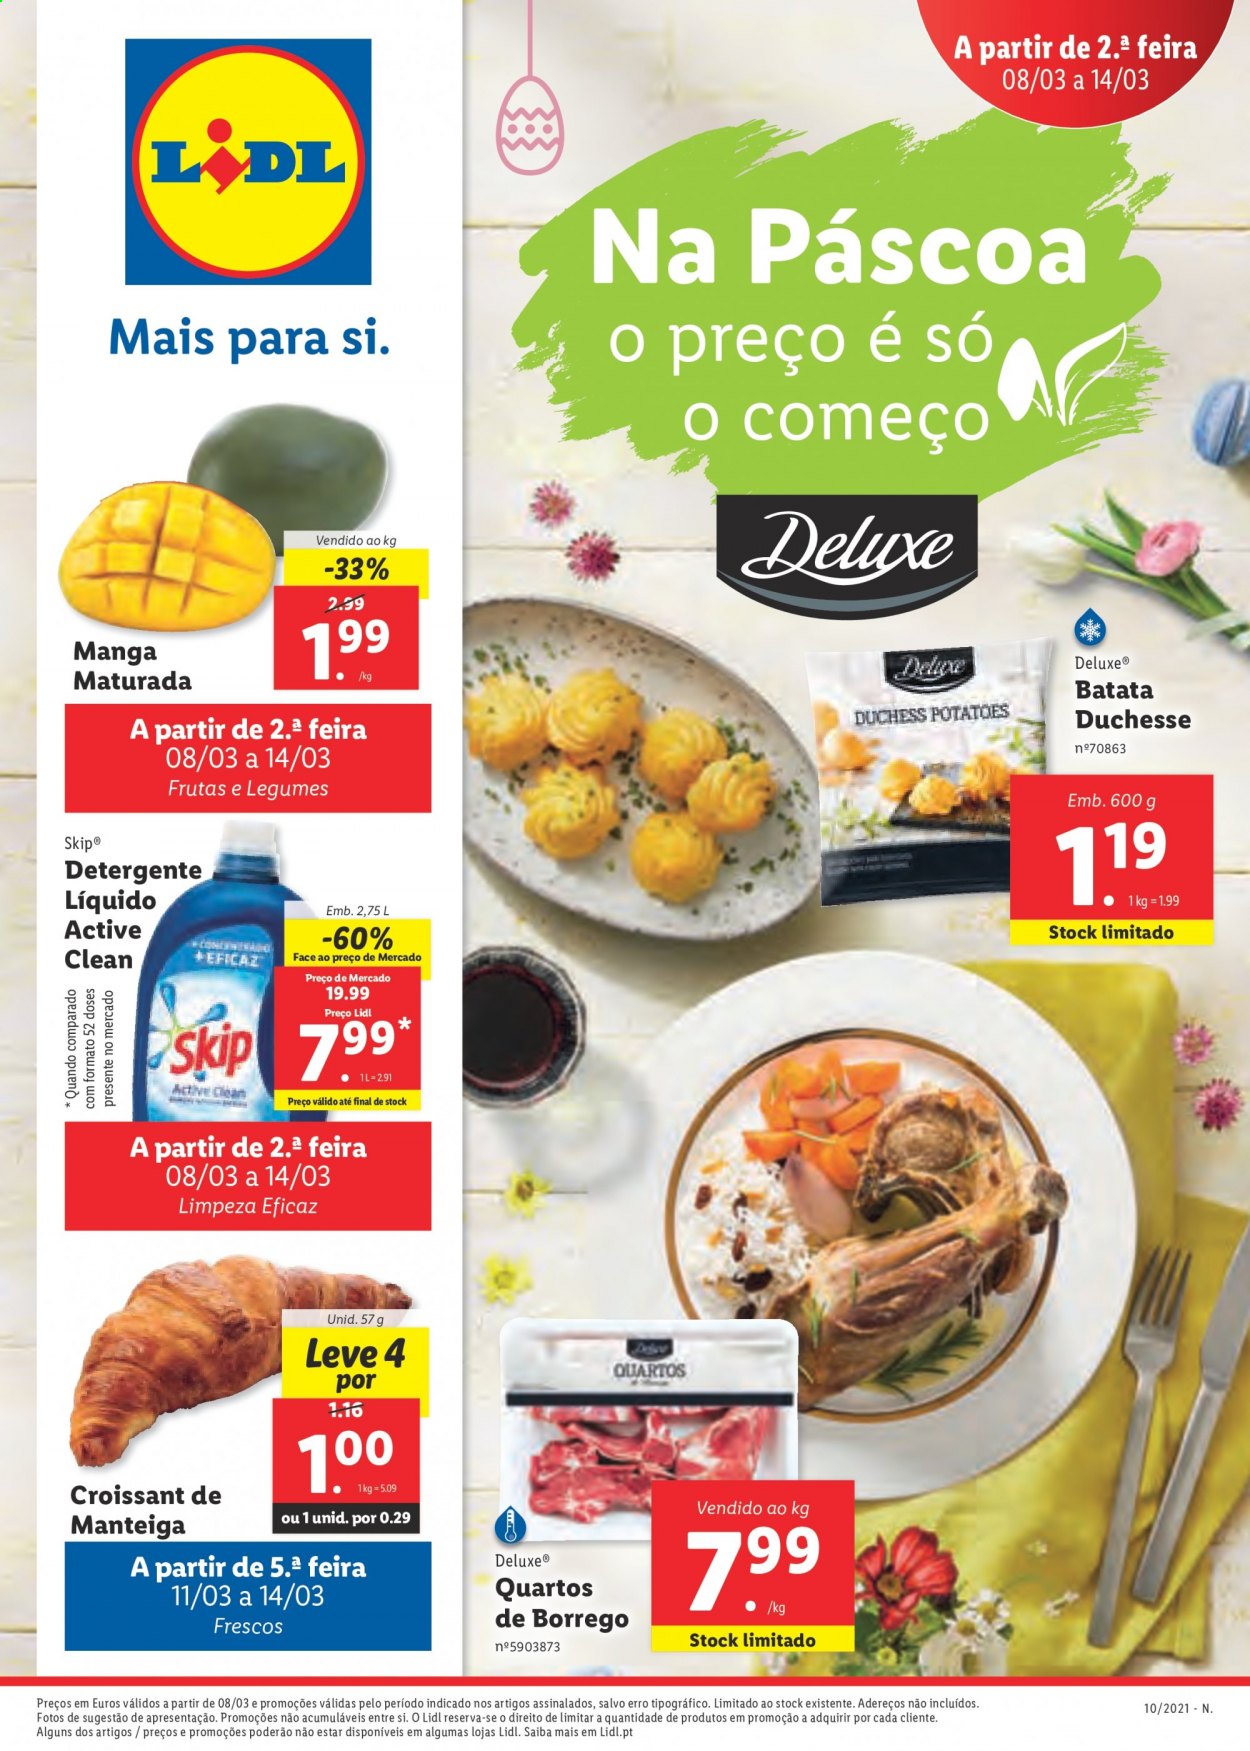 thumbnail - Folheto Lidl - 8.3.2021 - 14.3.2021 - Produtos em promoção - batata, legumes, croissant, manteiga, detergente, detergente líquido. Página 1.